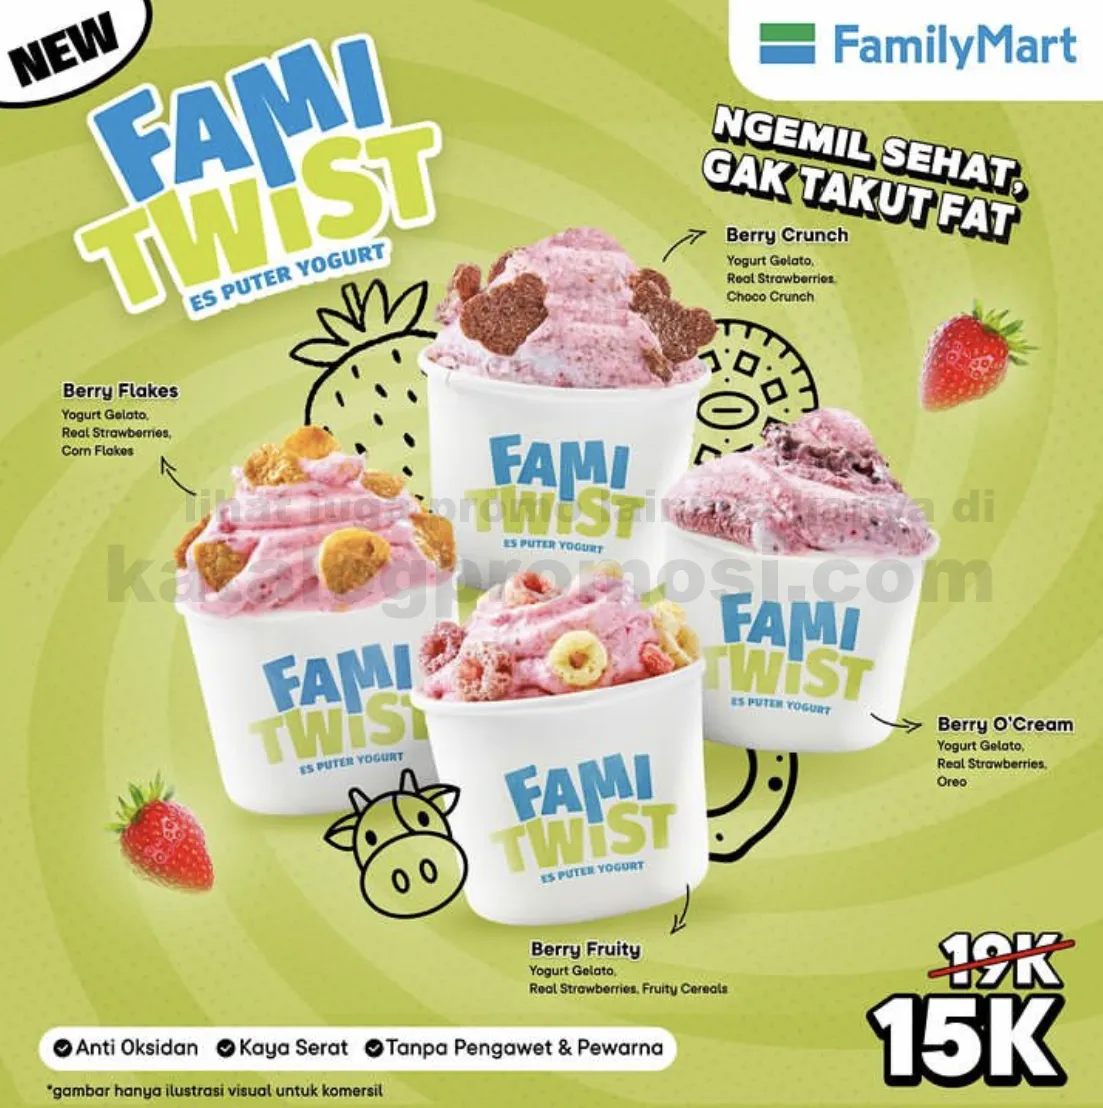 BARU ! FAMI TWIST - Es Puter Yogurt dari FAMILYMART - Harganya mulai Rp. 15ribuan aja